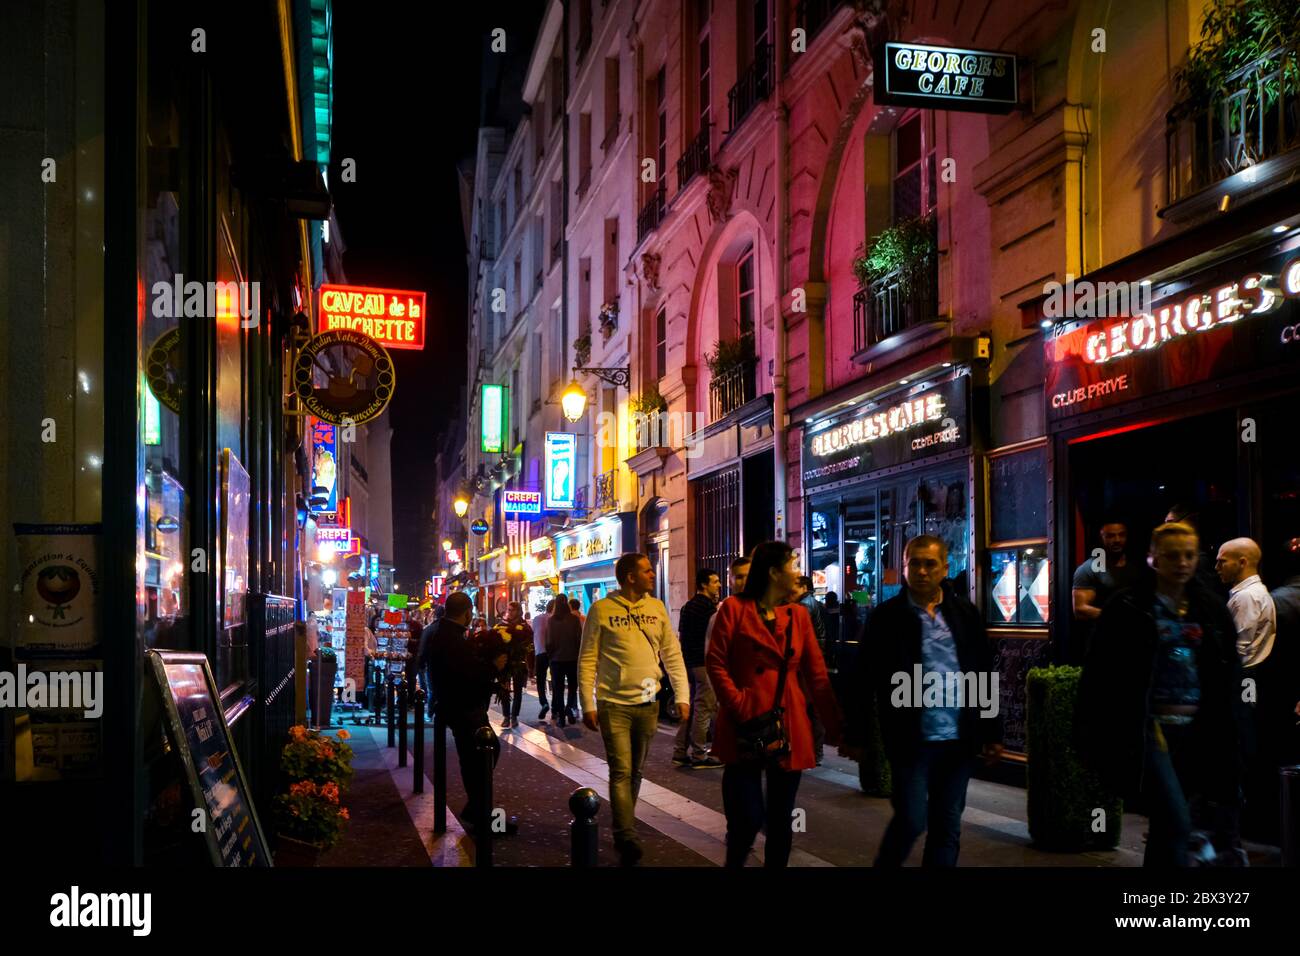 I turisti passano accanto a negozi e caffetterie mentre camminano per le colorate strade illuminate al neon di notte nel quartiere Latino di Parigi, Francia Foto Stock